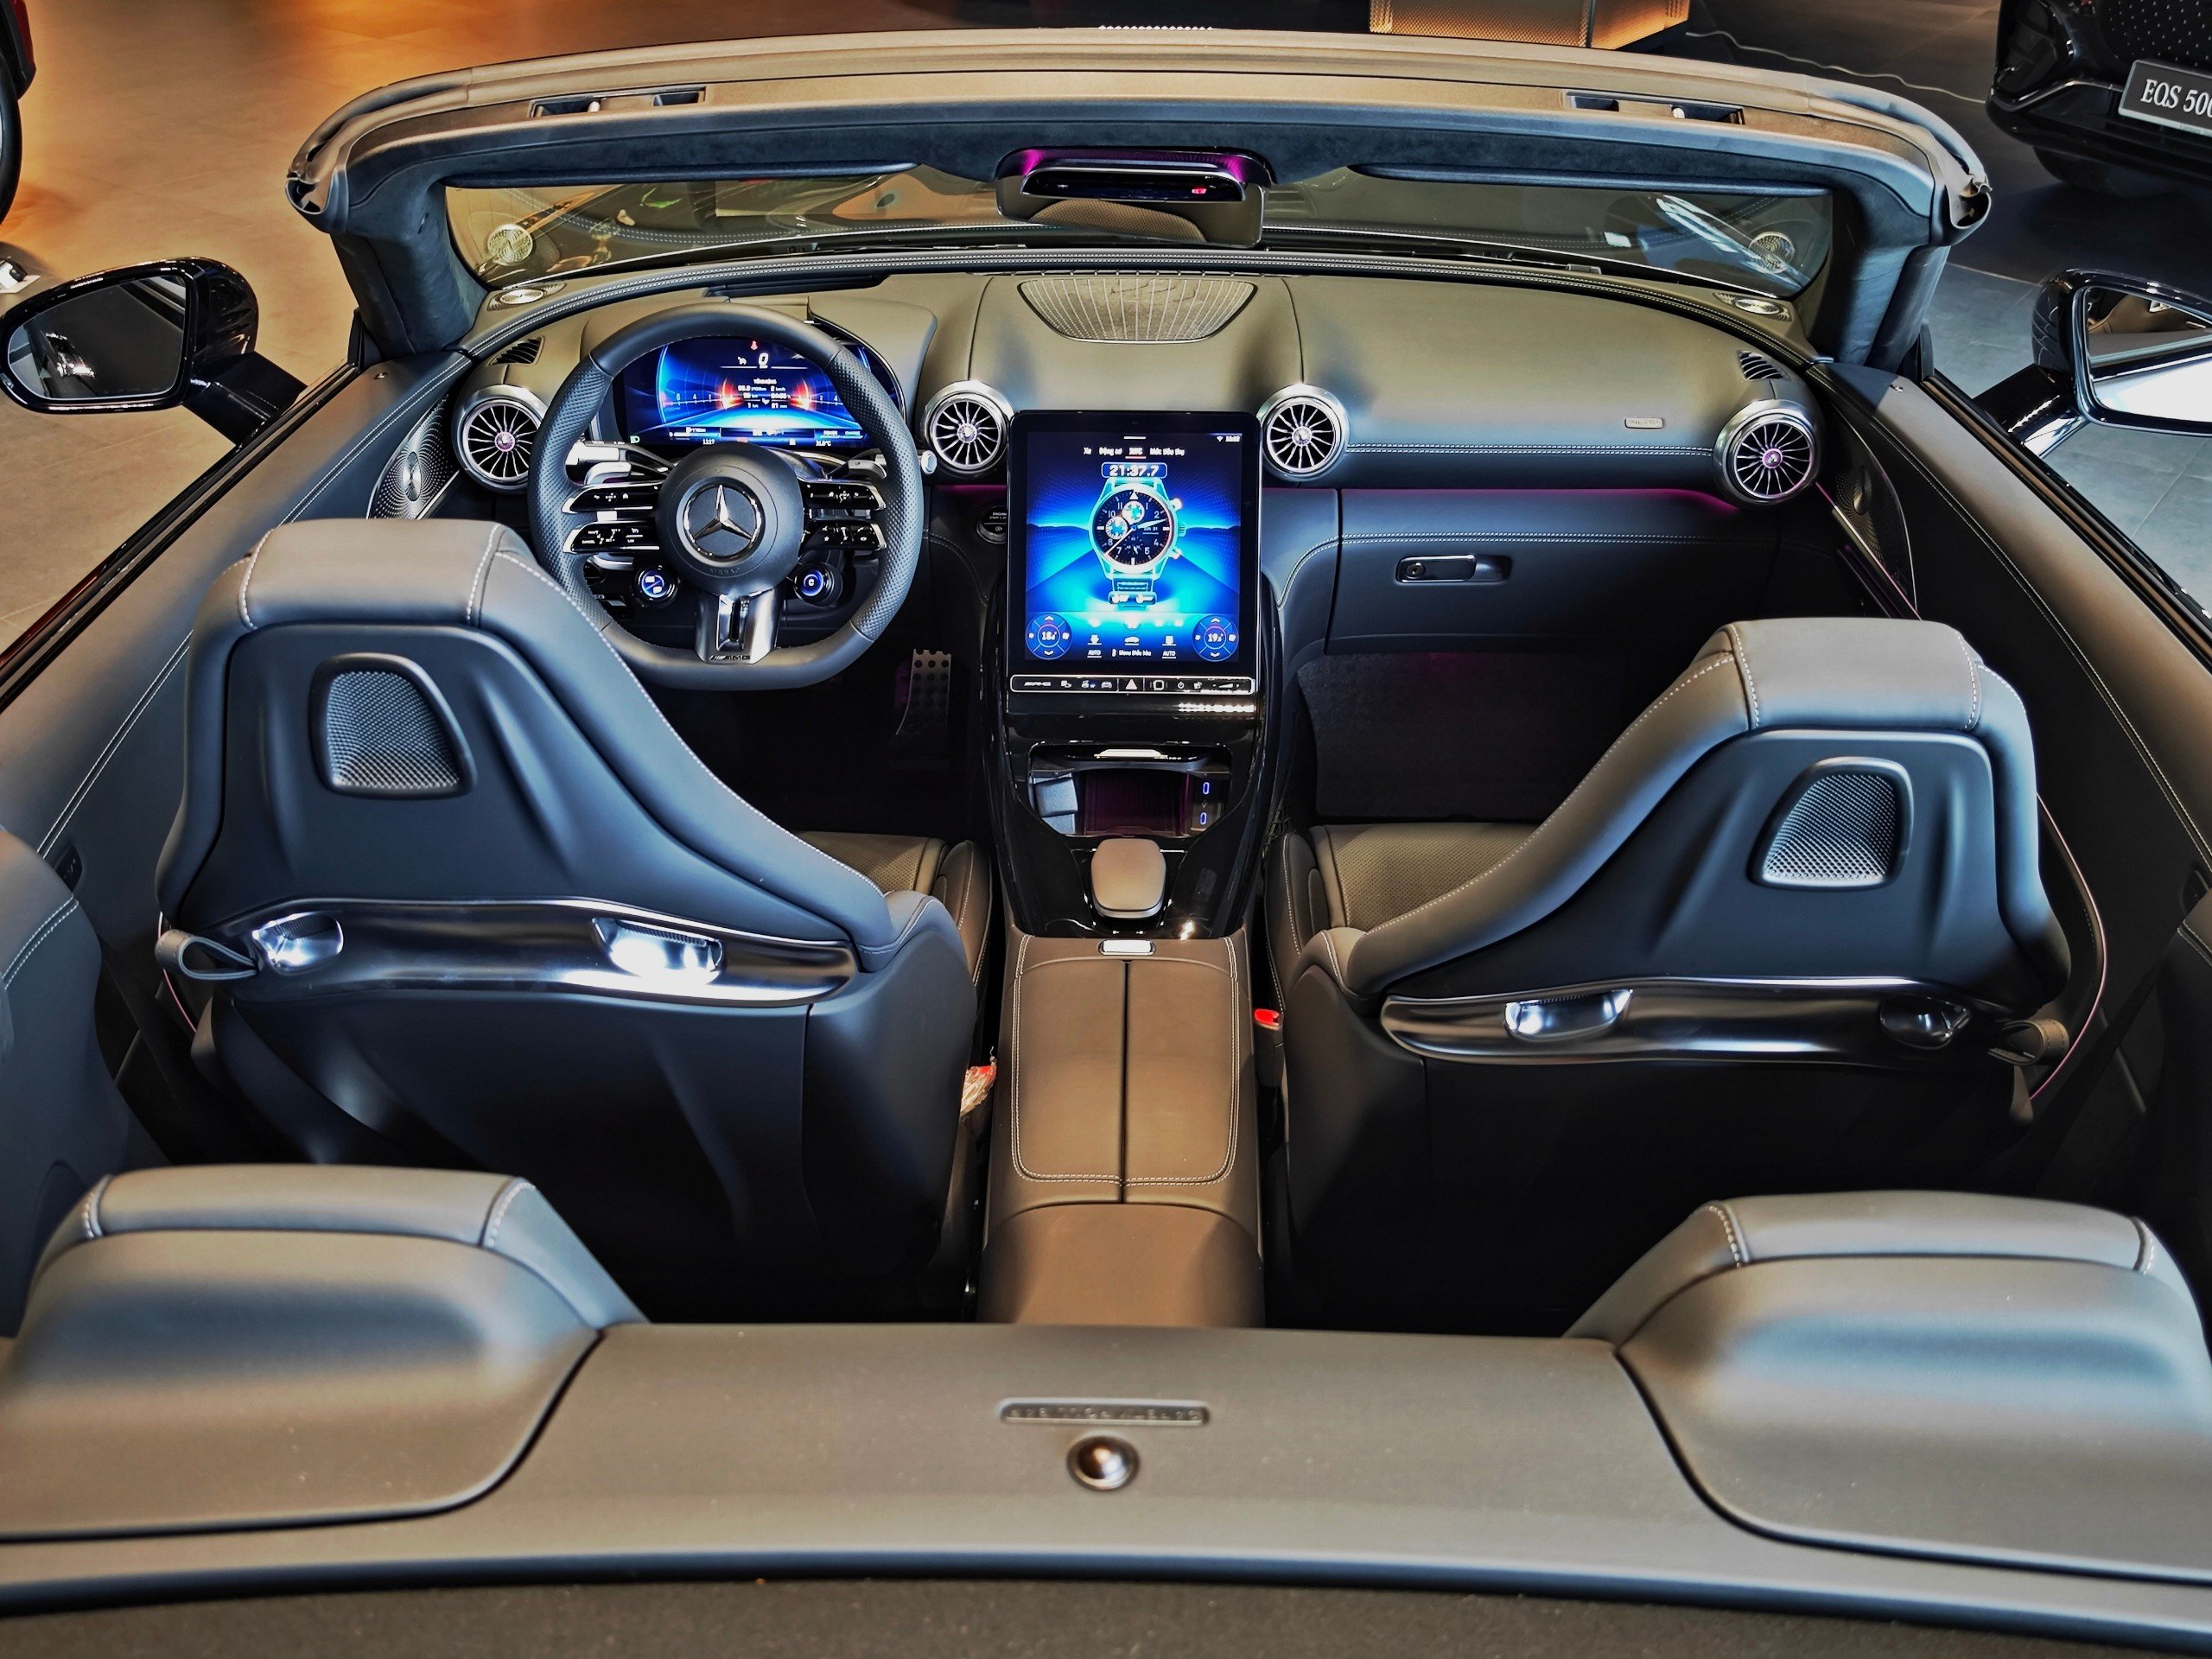 Chi tiết Mercedes-AMG SL 43 giá gần 7 tỷ đồng tại đại lý: Gói ngoại thất thể thao, nhiều công nghệ hiện đại đấu Porsche 911- Ảnh 8.